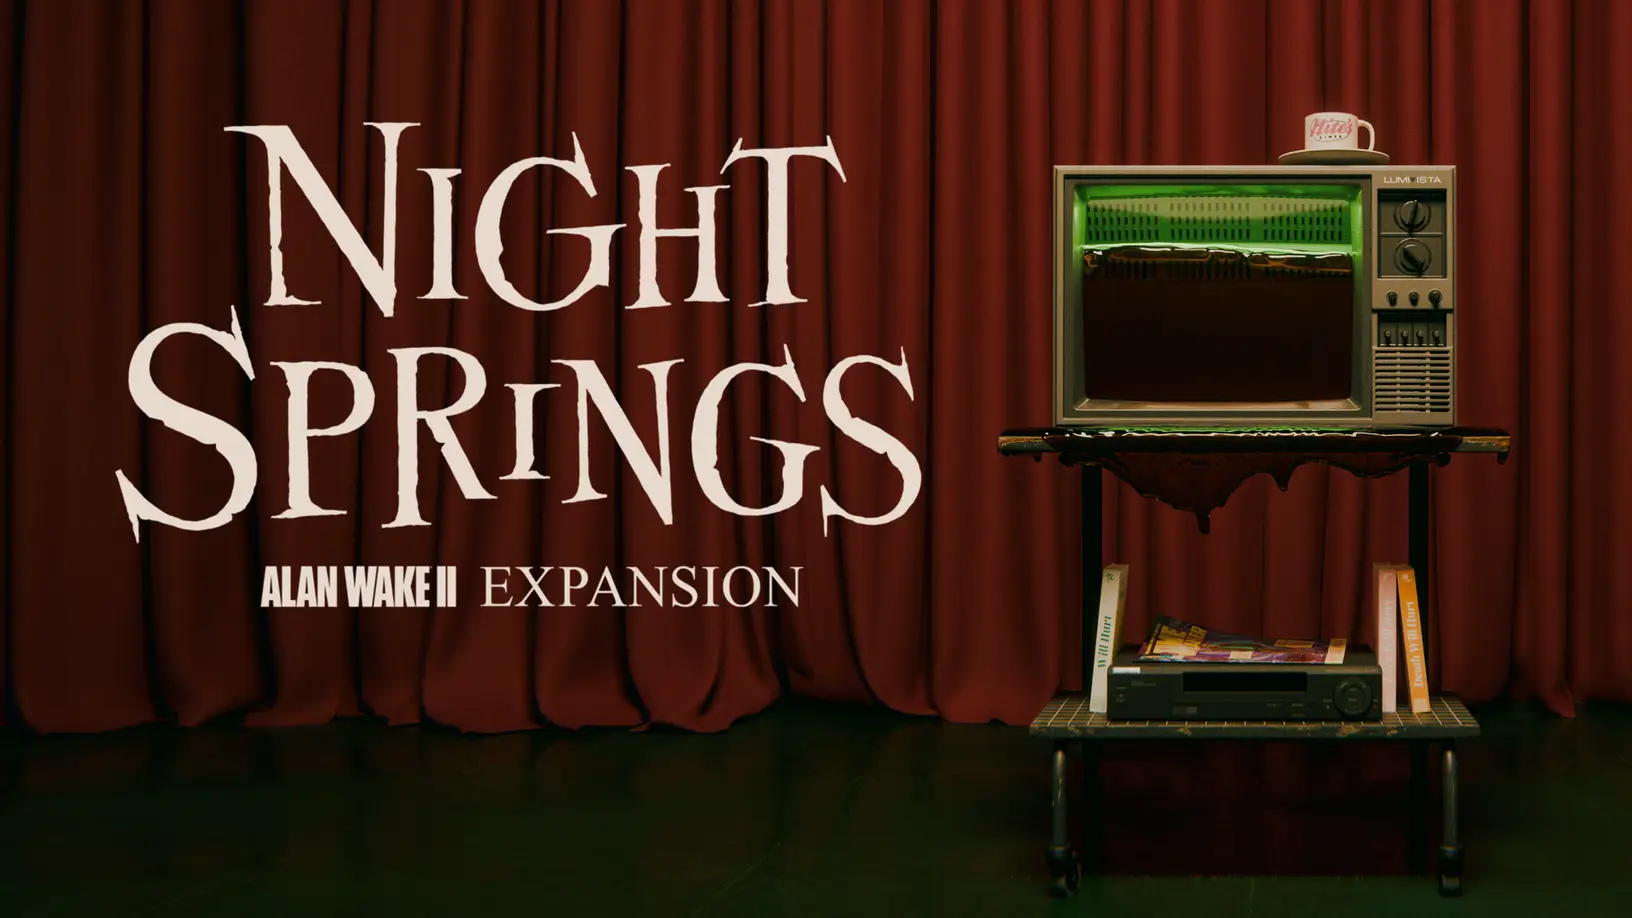 8 червня Remedy випустила Night Springs — перше доповнення до Alan Wake 2, де ми будемо грати за 3 різних персонажів